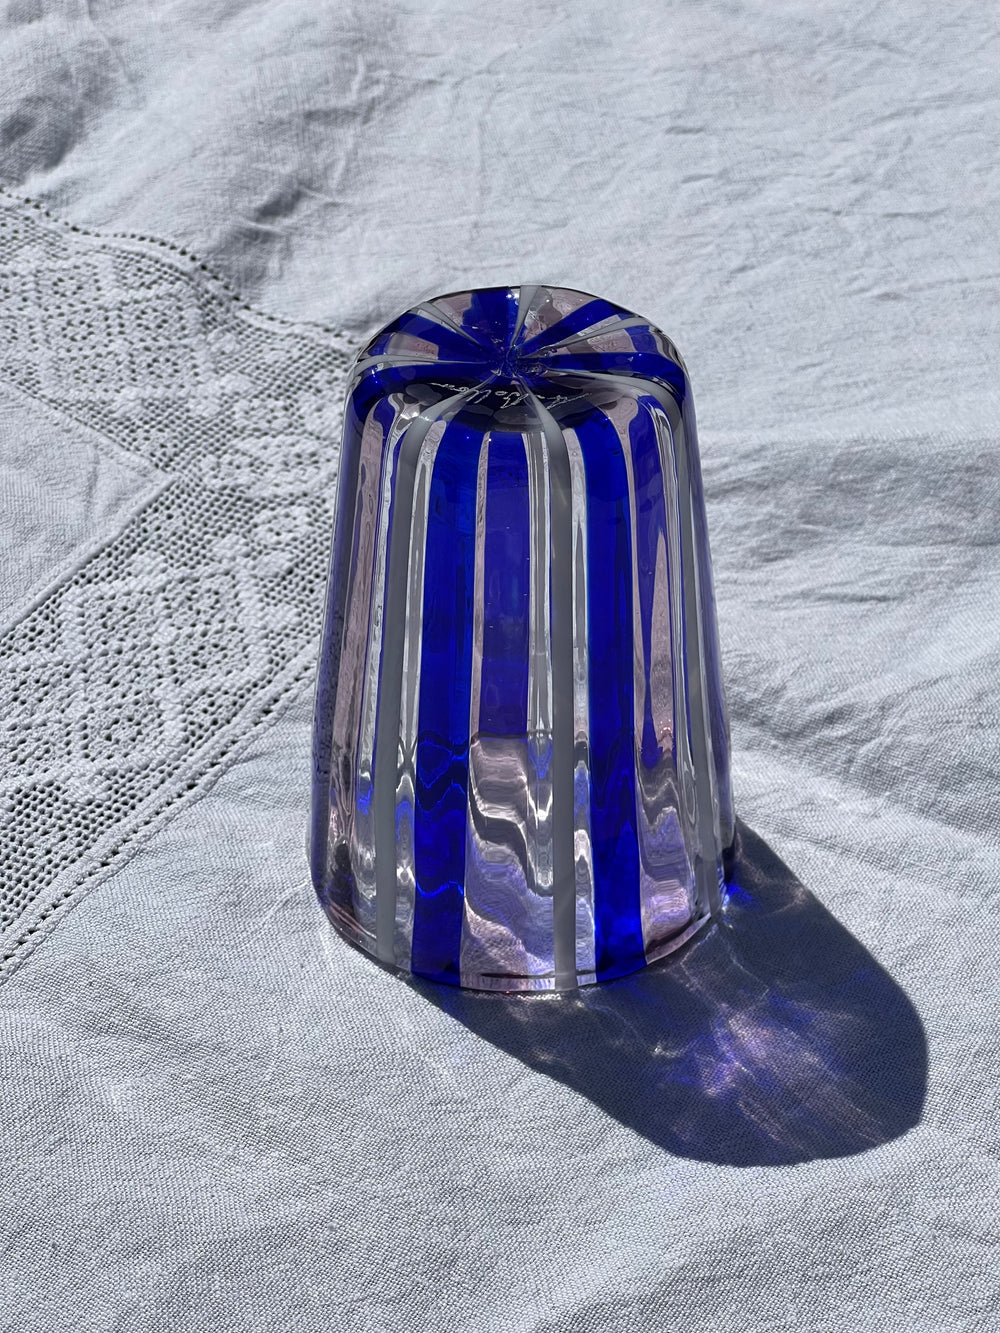 Håndblæst Murano Glas i Pio Ponti Stil med Blå, Hvide og Ametyst Striber Murano